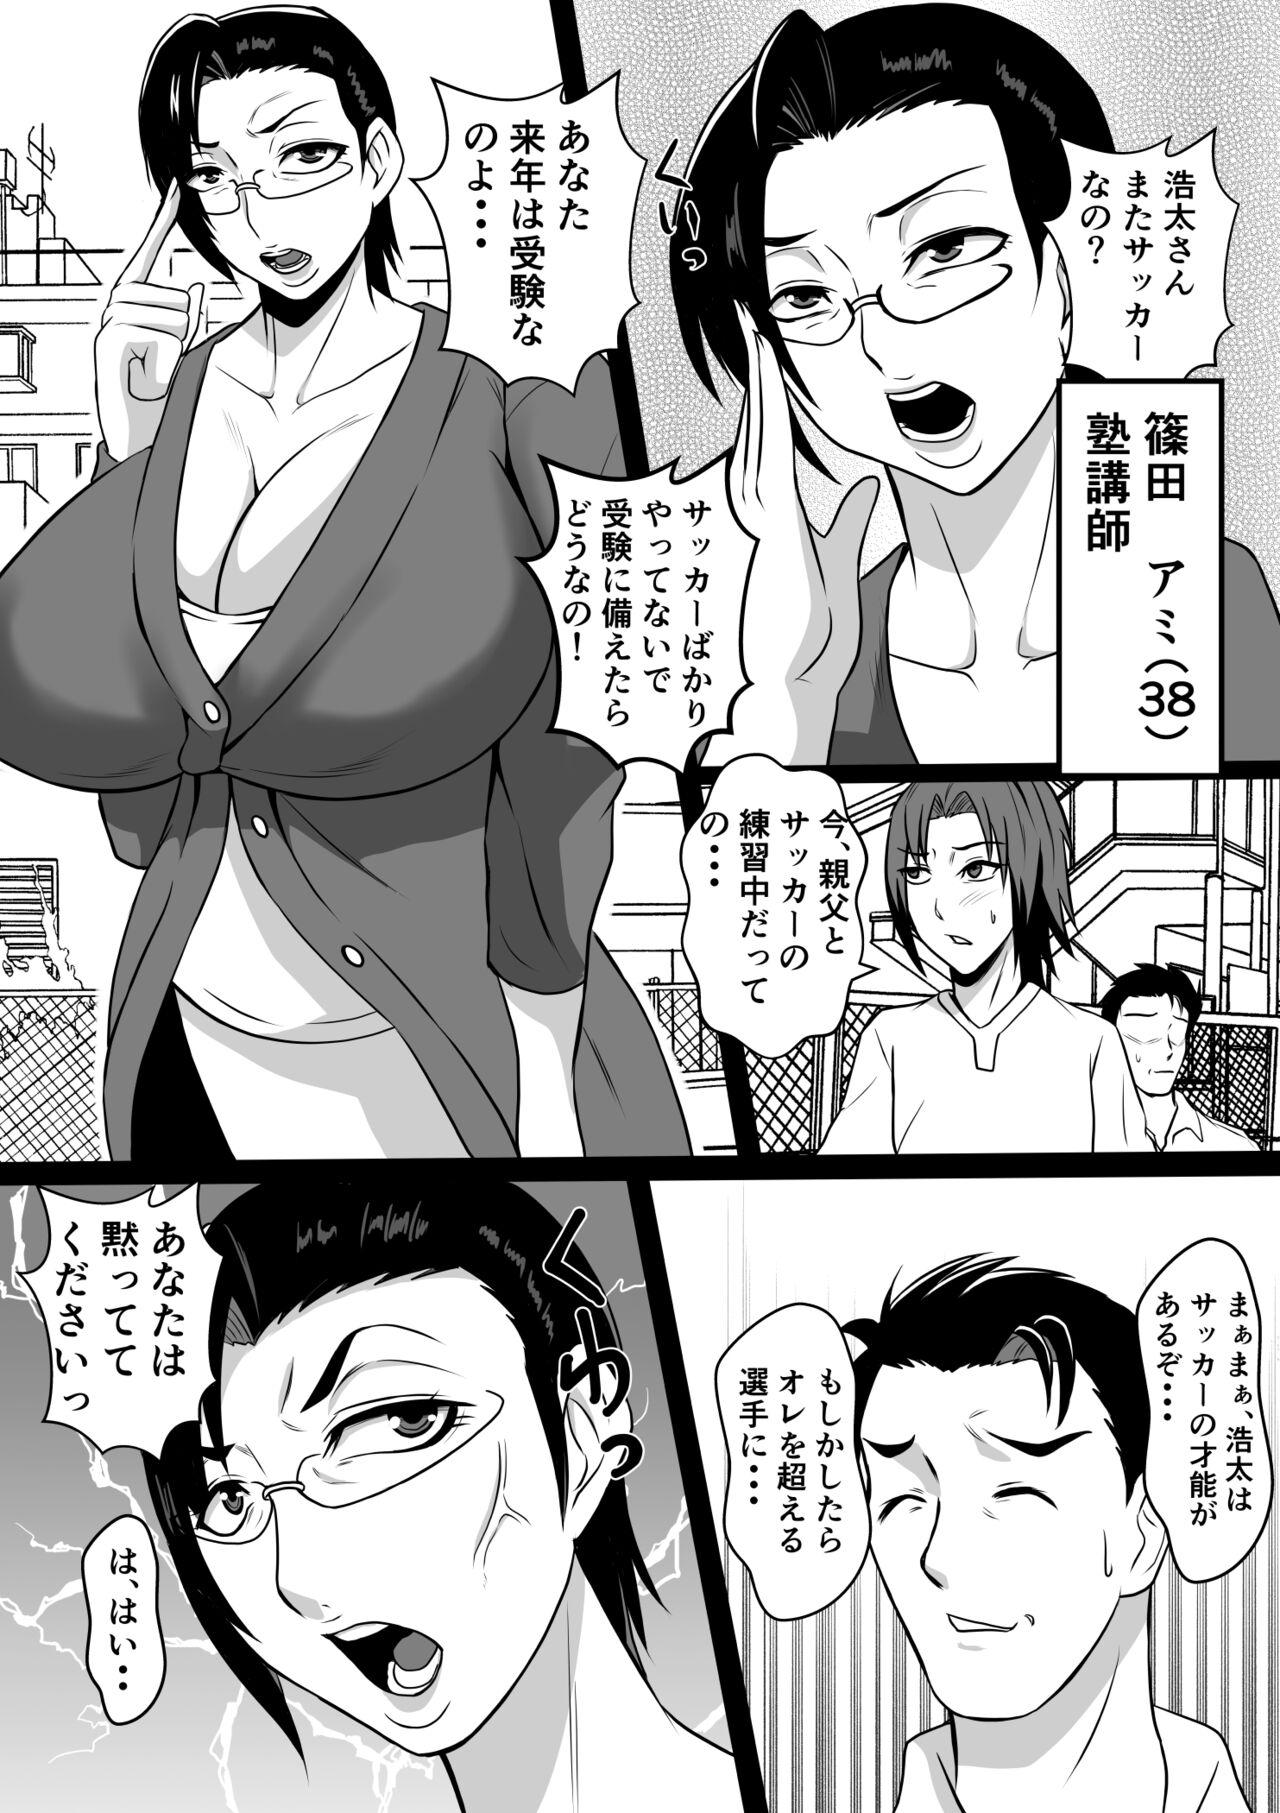 Bribe Gami×2 Mama to no Yarichin Nyuin Seikatsu - Original Office Sex - Picture 3